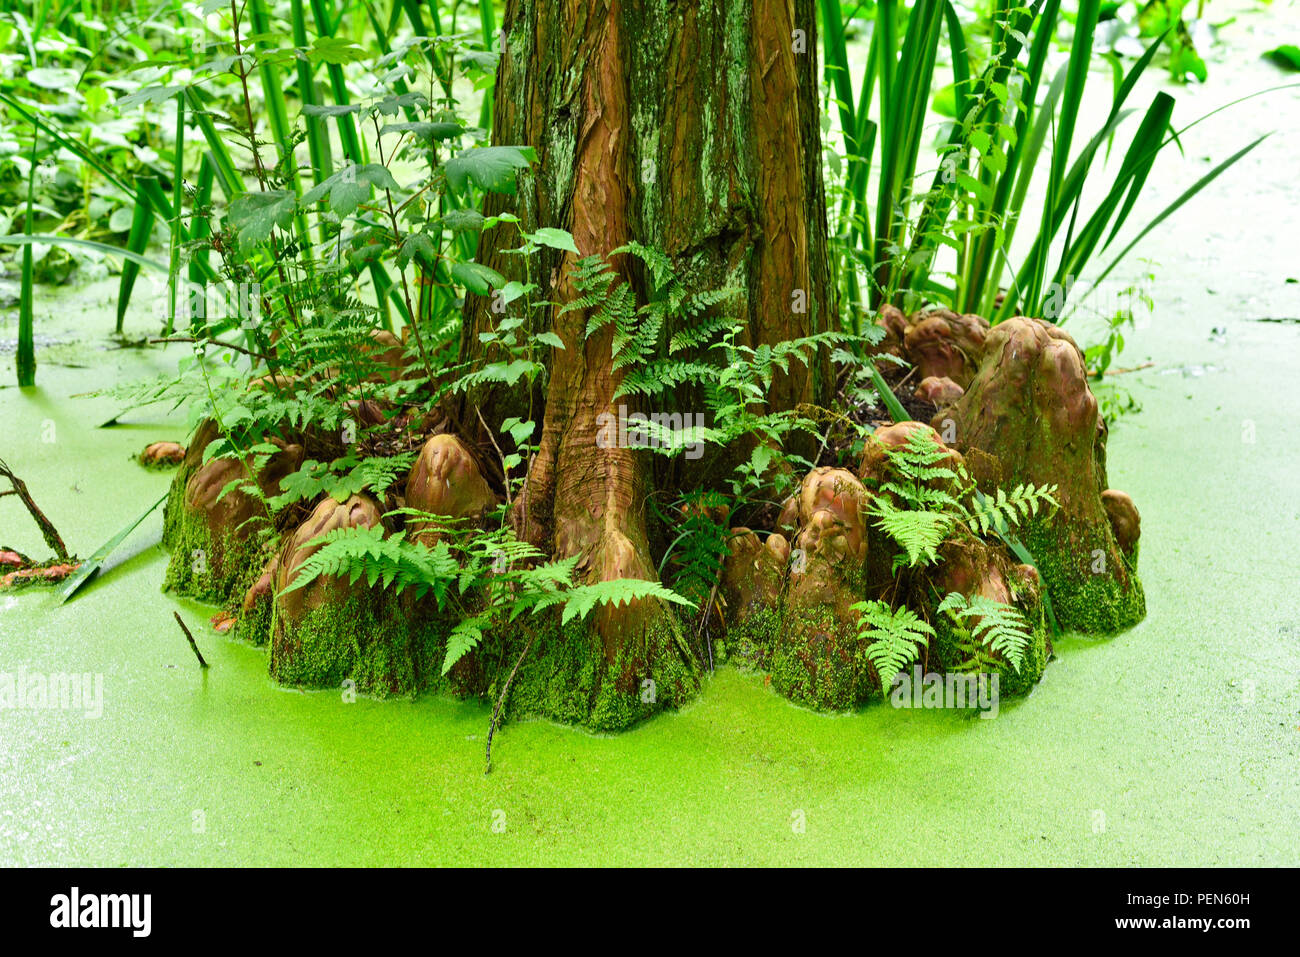 Cypress palude con alberi secolari e laghetto verde. Idilliaco sullo sfondo della natura e la conservazione delle zone umide. Foto Stock